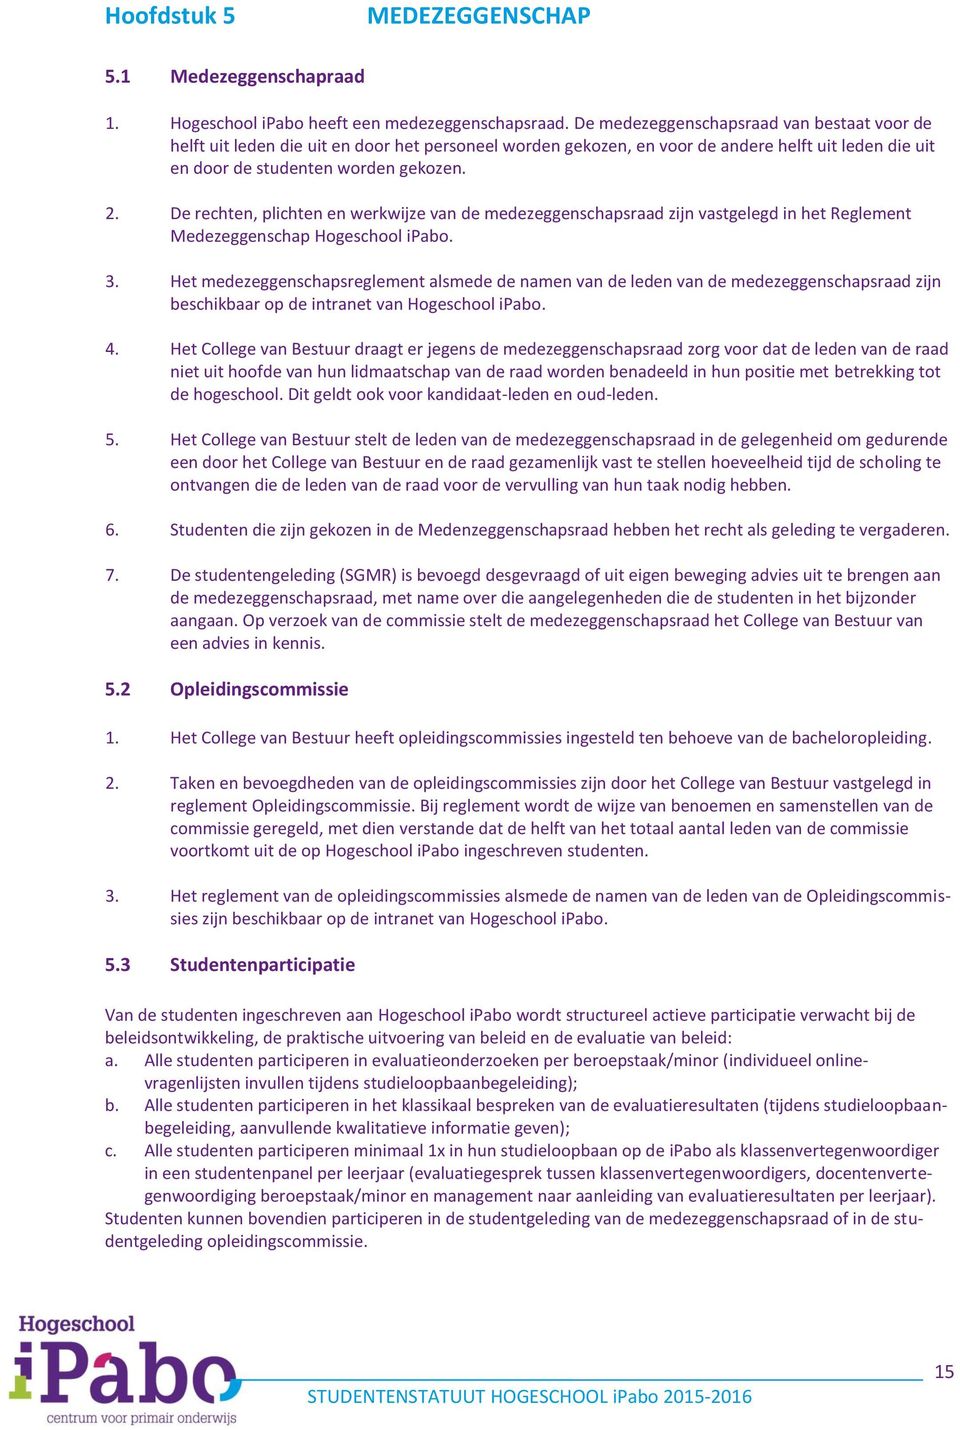 De rechten, plichten en werkwijze van de medezeggenschapsraad zijn vastgelegd in het Reglement Medezeggenschap Hogeschool ipabo. 3.